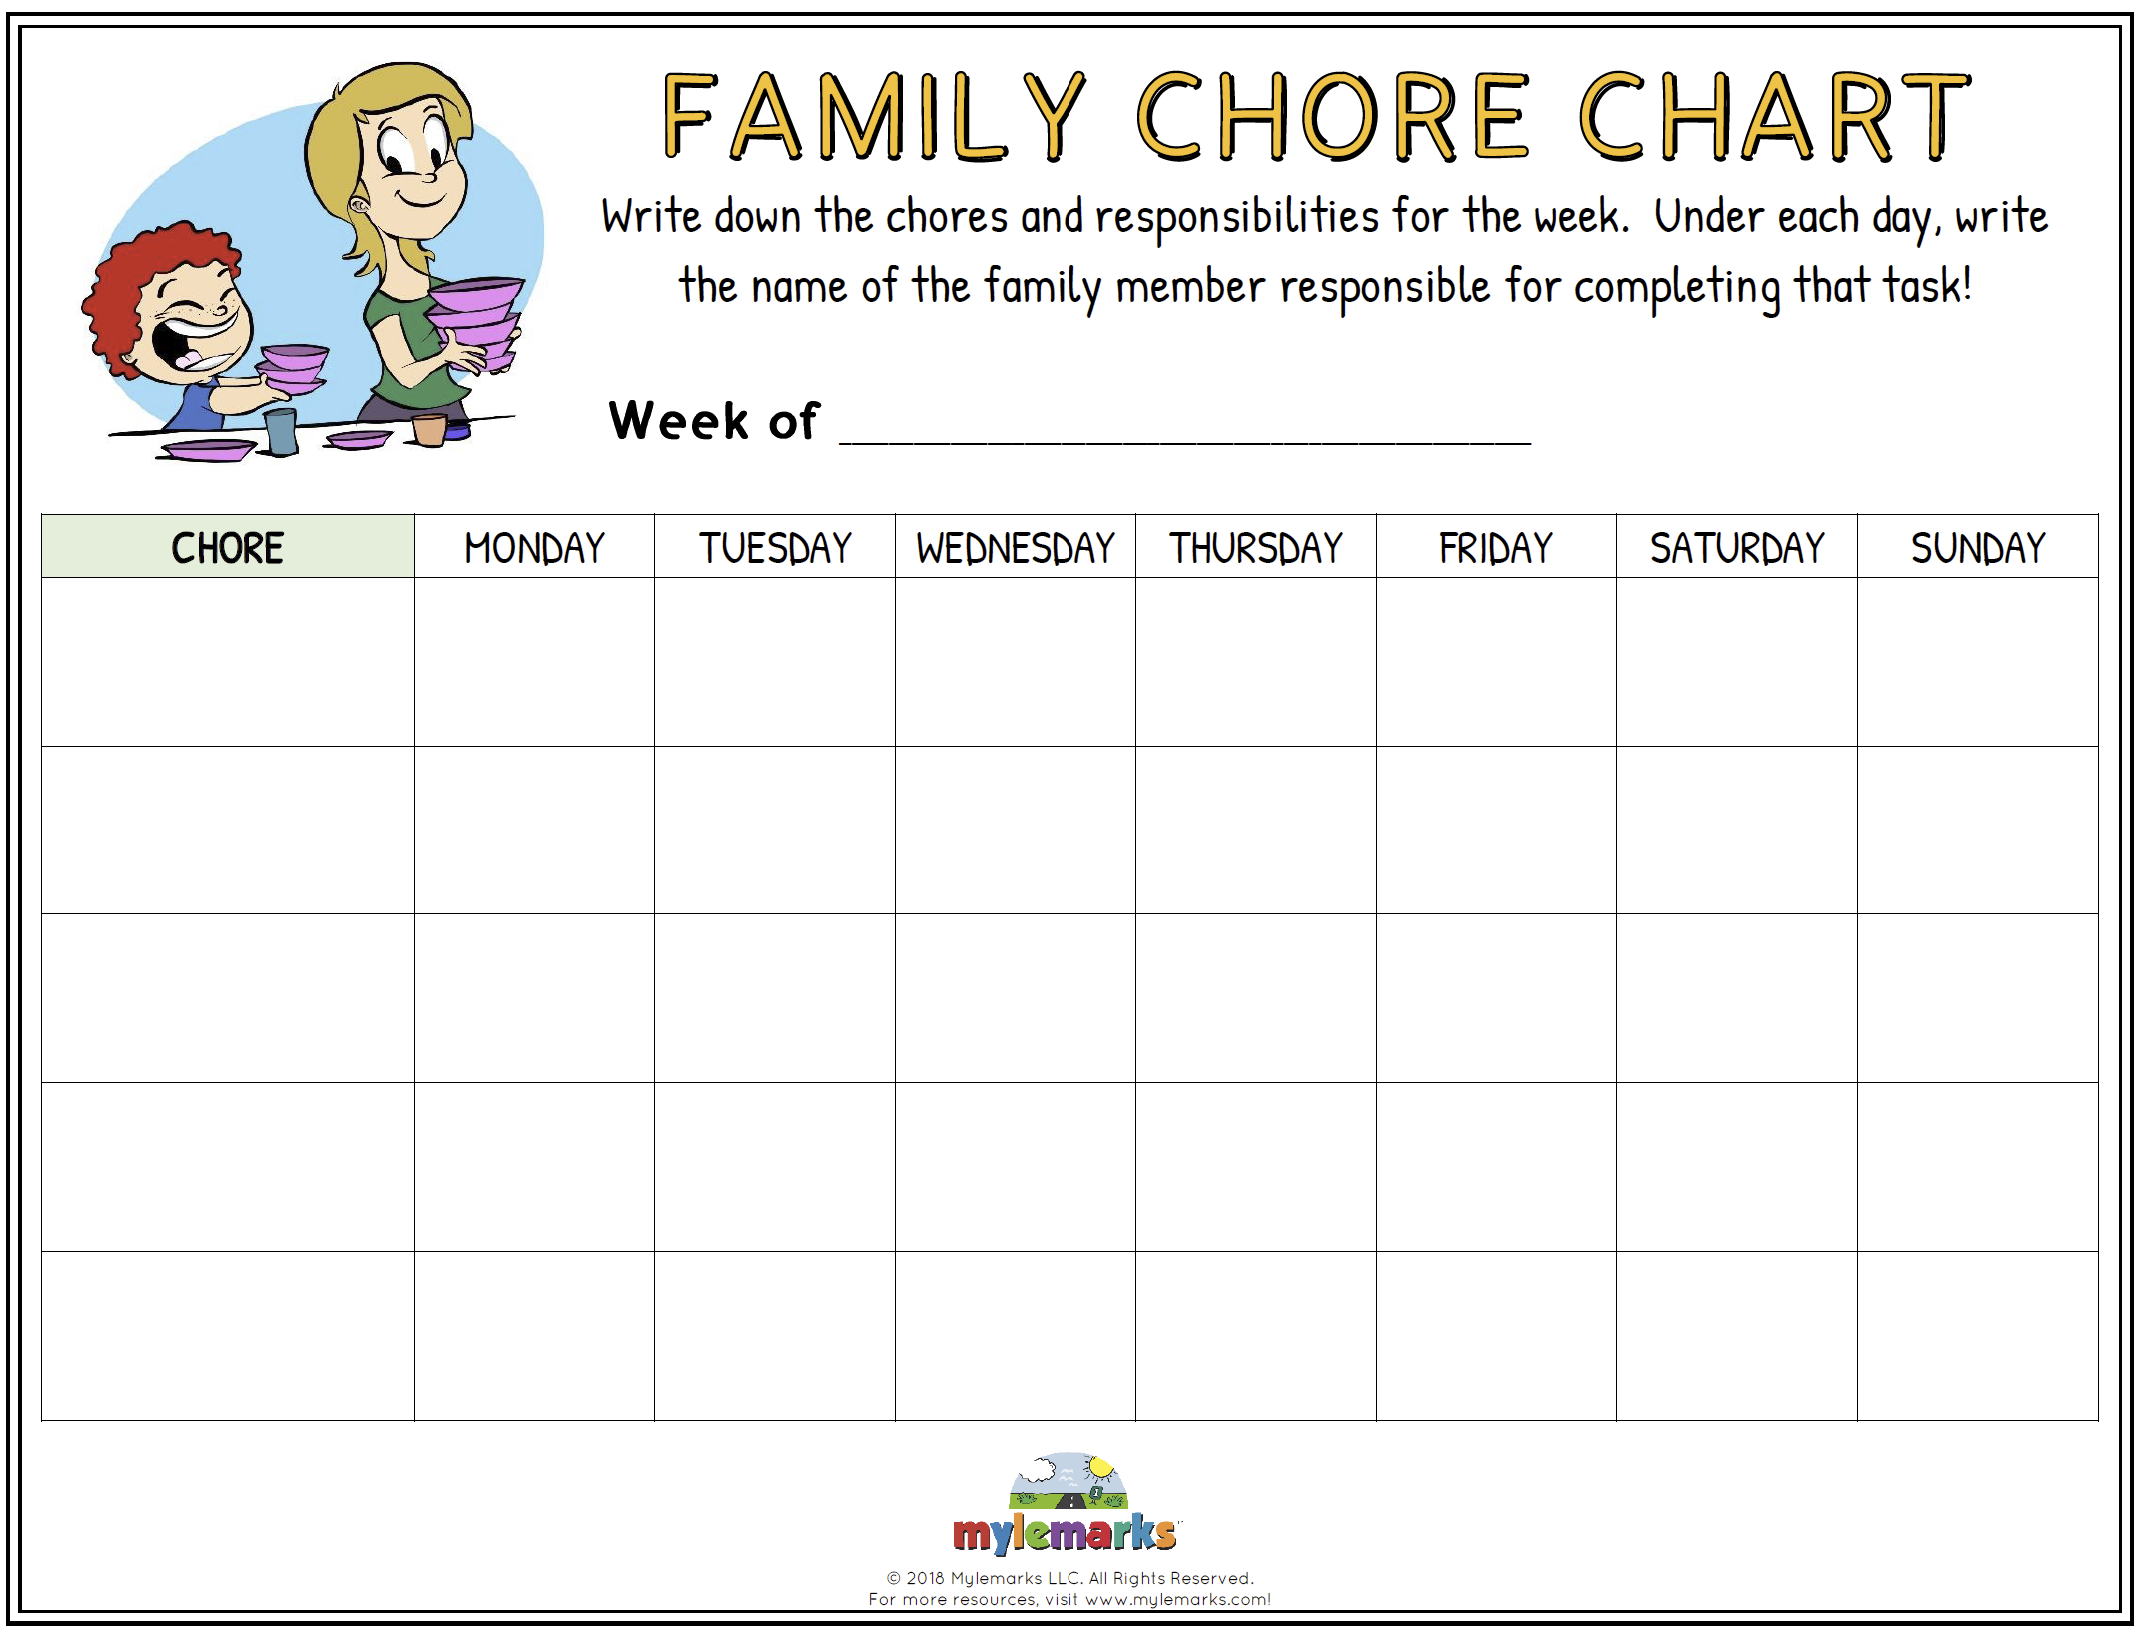 family-chore-chart-f